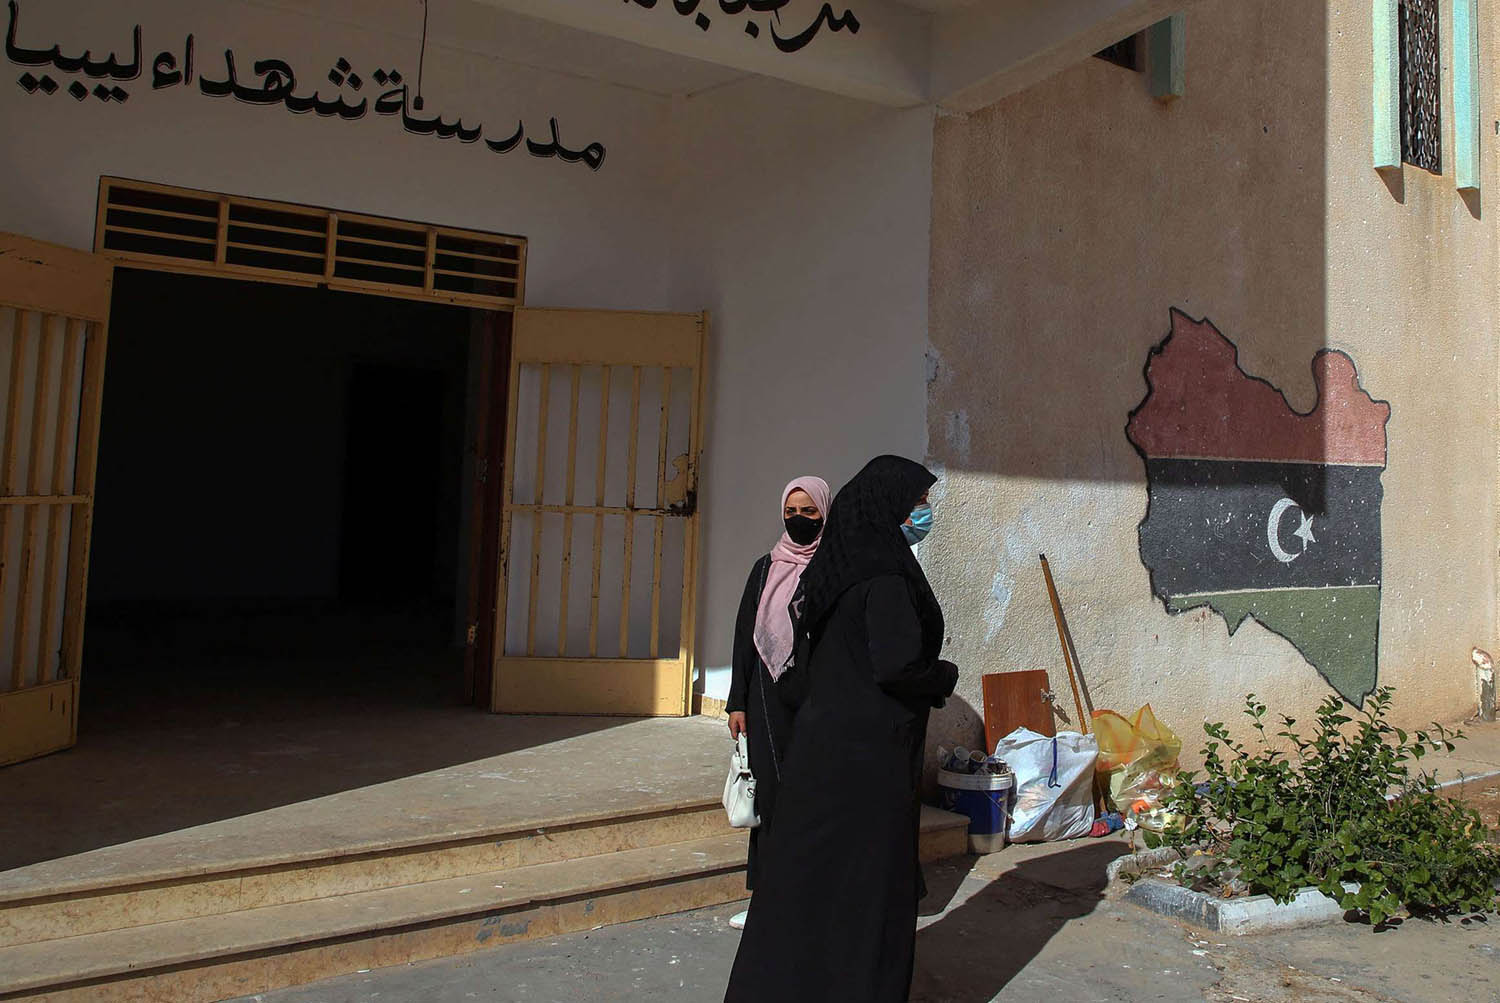 مدرسة في عين زارة في طرابلس تعرضت للقصف في القتال بين حكومة الوفاق والجيش الليبي بقيادة خليفة حفتر